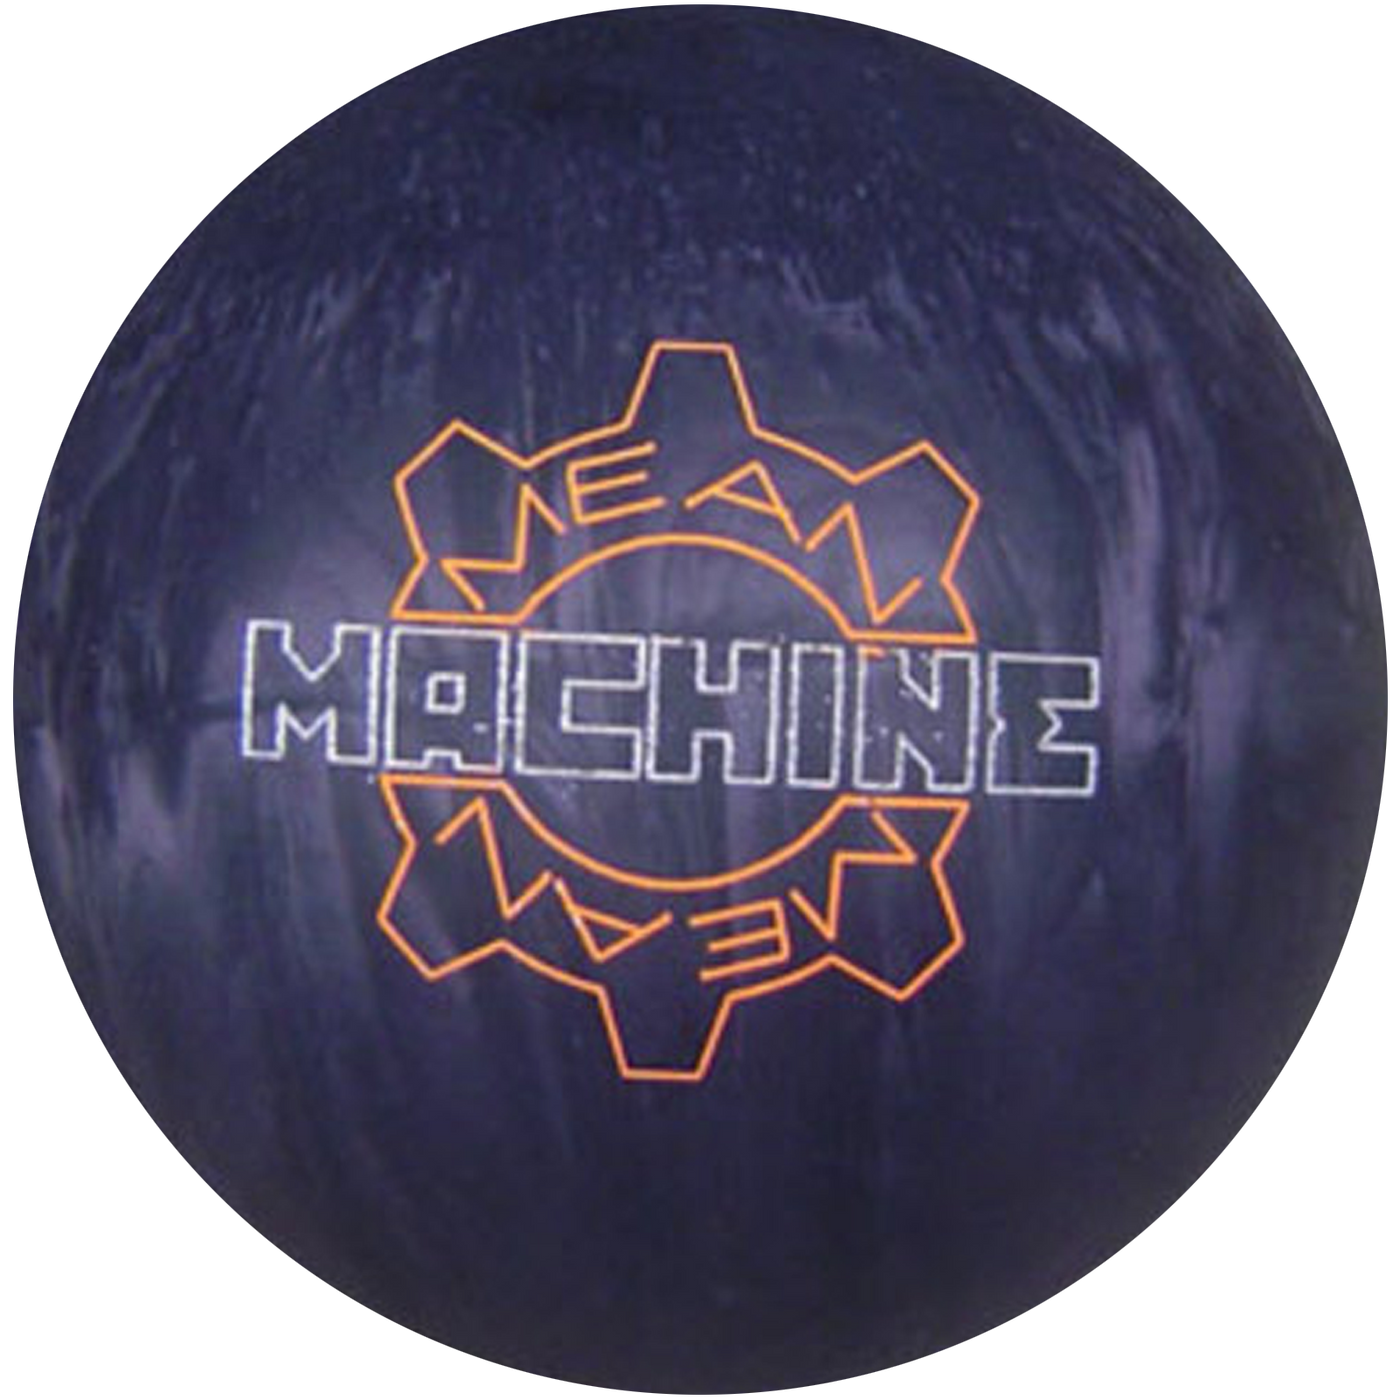 Mean Machine Bowling Ball